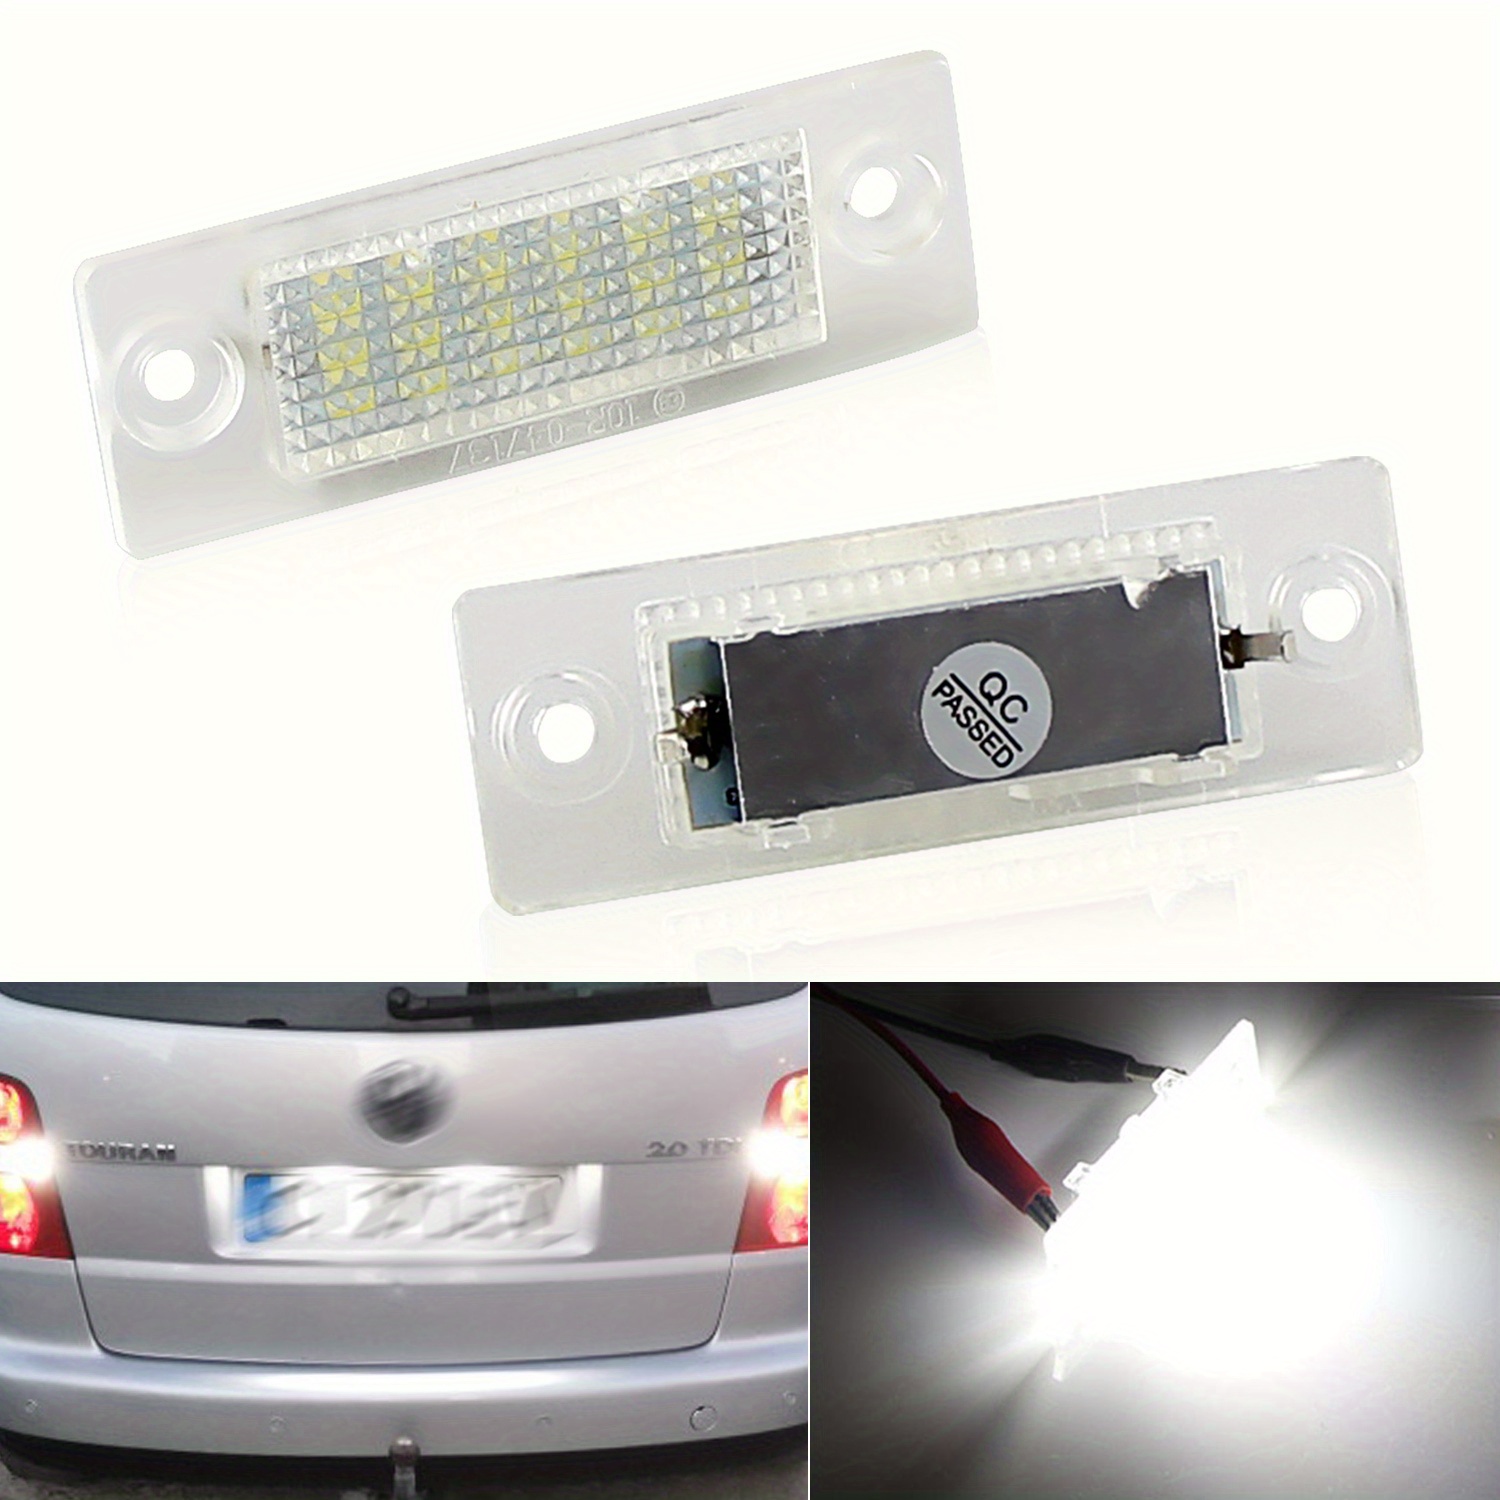 2 x LED Kennzeichenbeleuchtung für VW Caddy MK3 Transporter T5 T6 T6.1 Golf  MK5 P/Assat B5 B6 J/etta Touran Skoda Superb 18-SMD 6000K Weiß Canbus LED  Tag Lampen : : Auto 